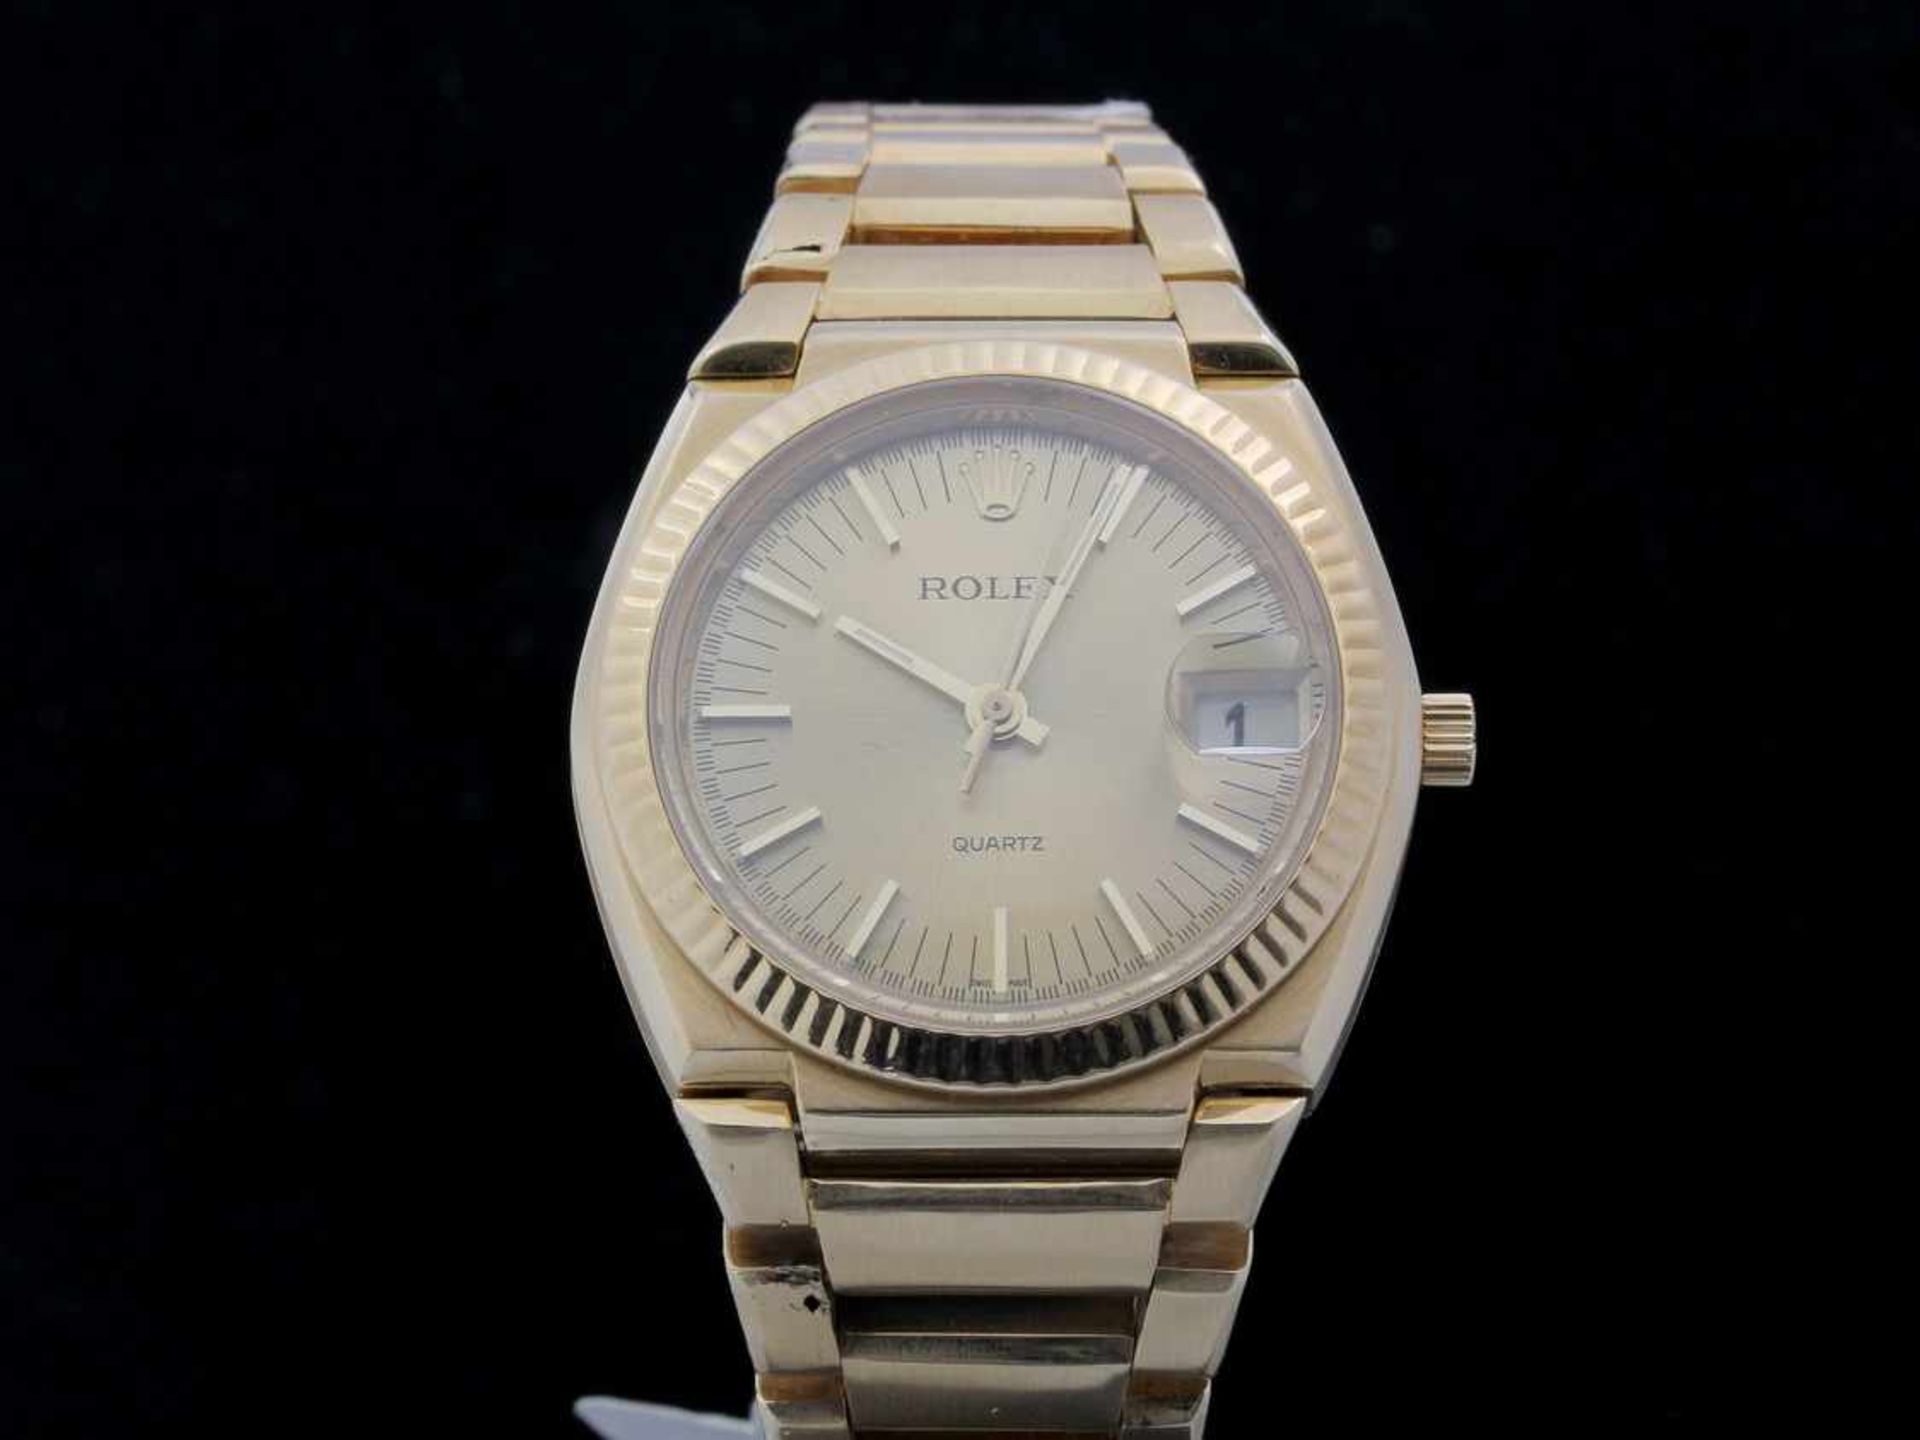 Rolex Stimmgabel Herrenarmbanduhr in Gold, limitierte Auflage, Ref.5100. Die Uhr ist in einem sehr - Bild 3 aus 3